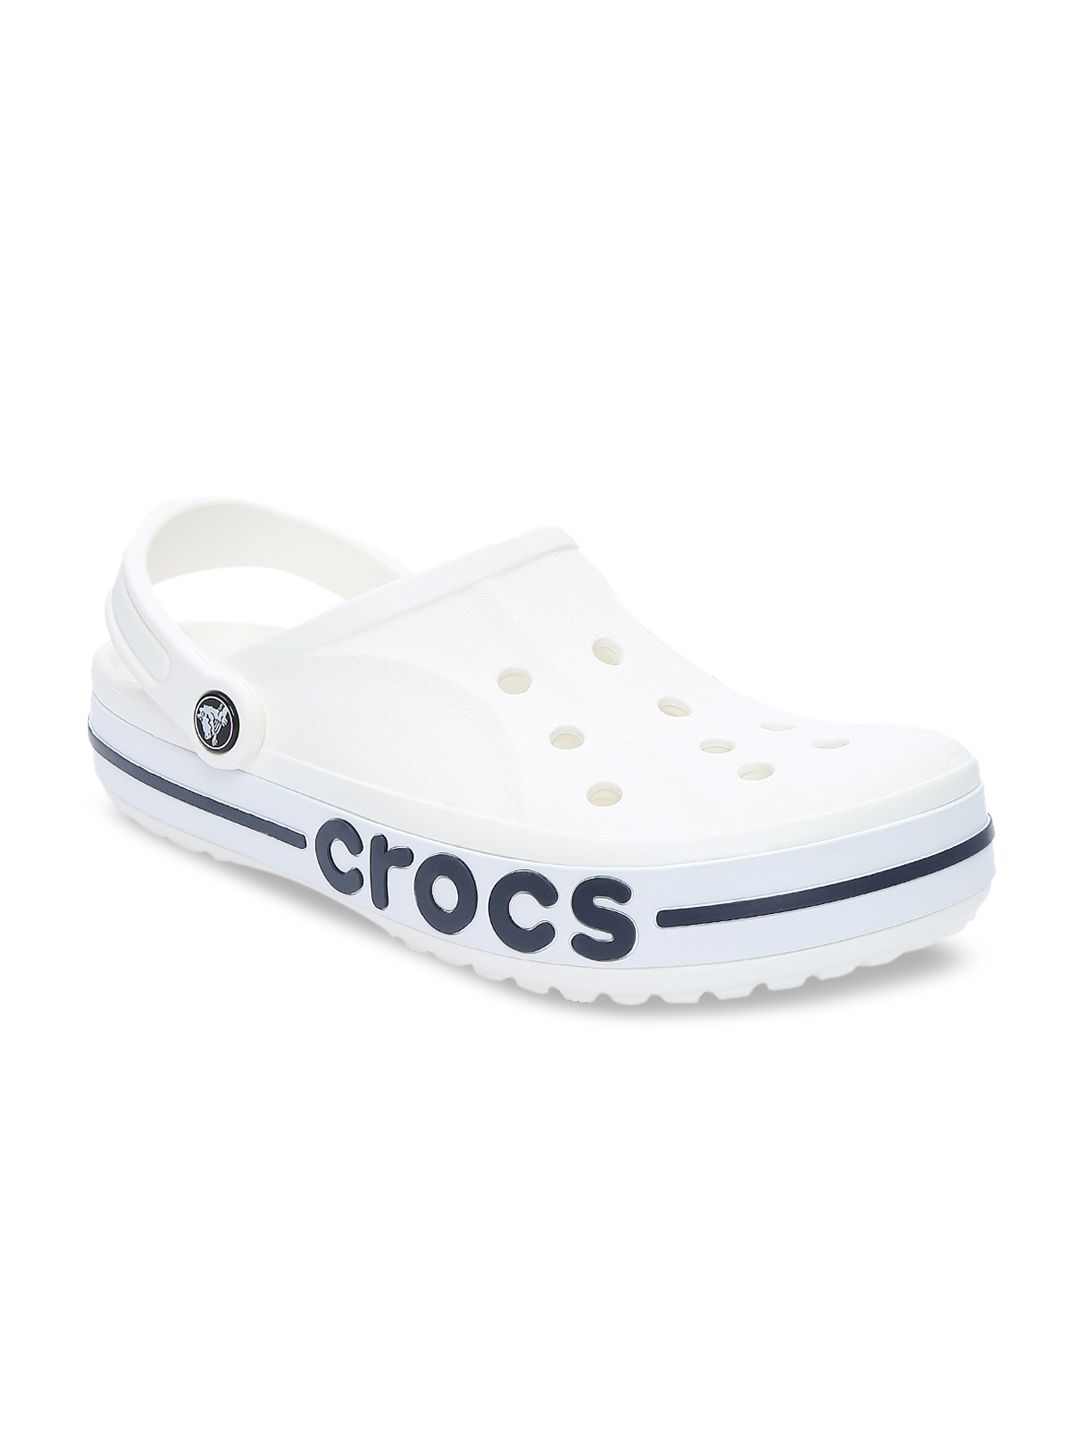 Crocs Unisex White & Blue Bayaband Clogs Price in India